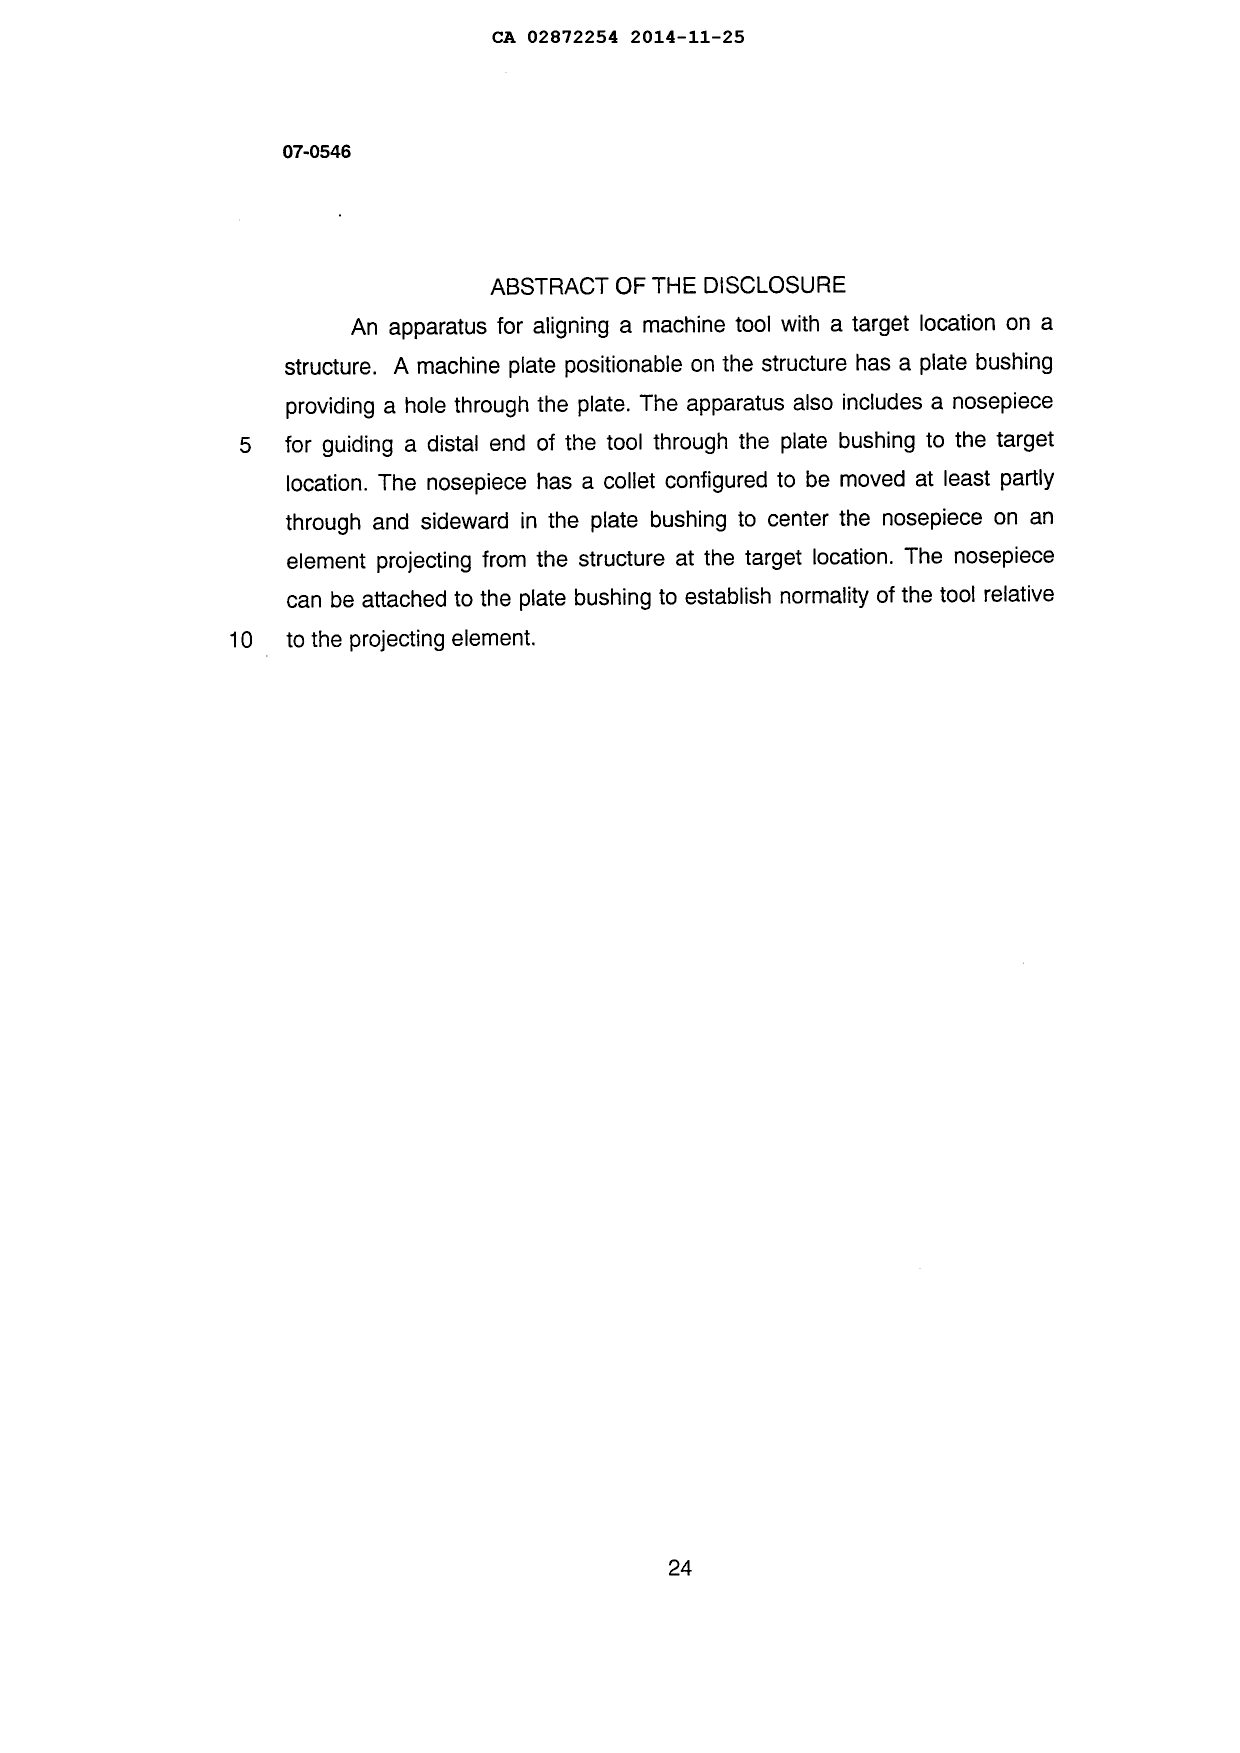 Document de brevet canadien 2872254. Abrégé 20141125. Image 1 de 1